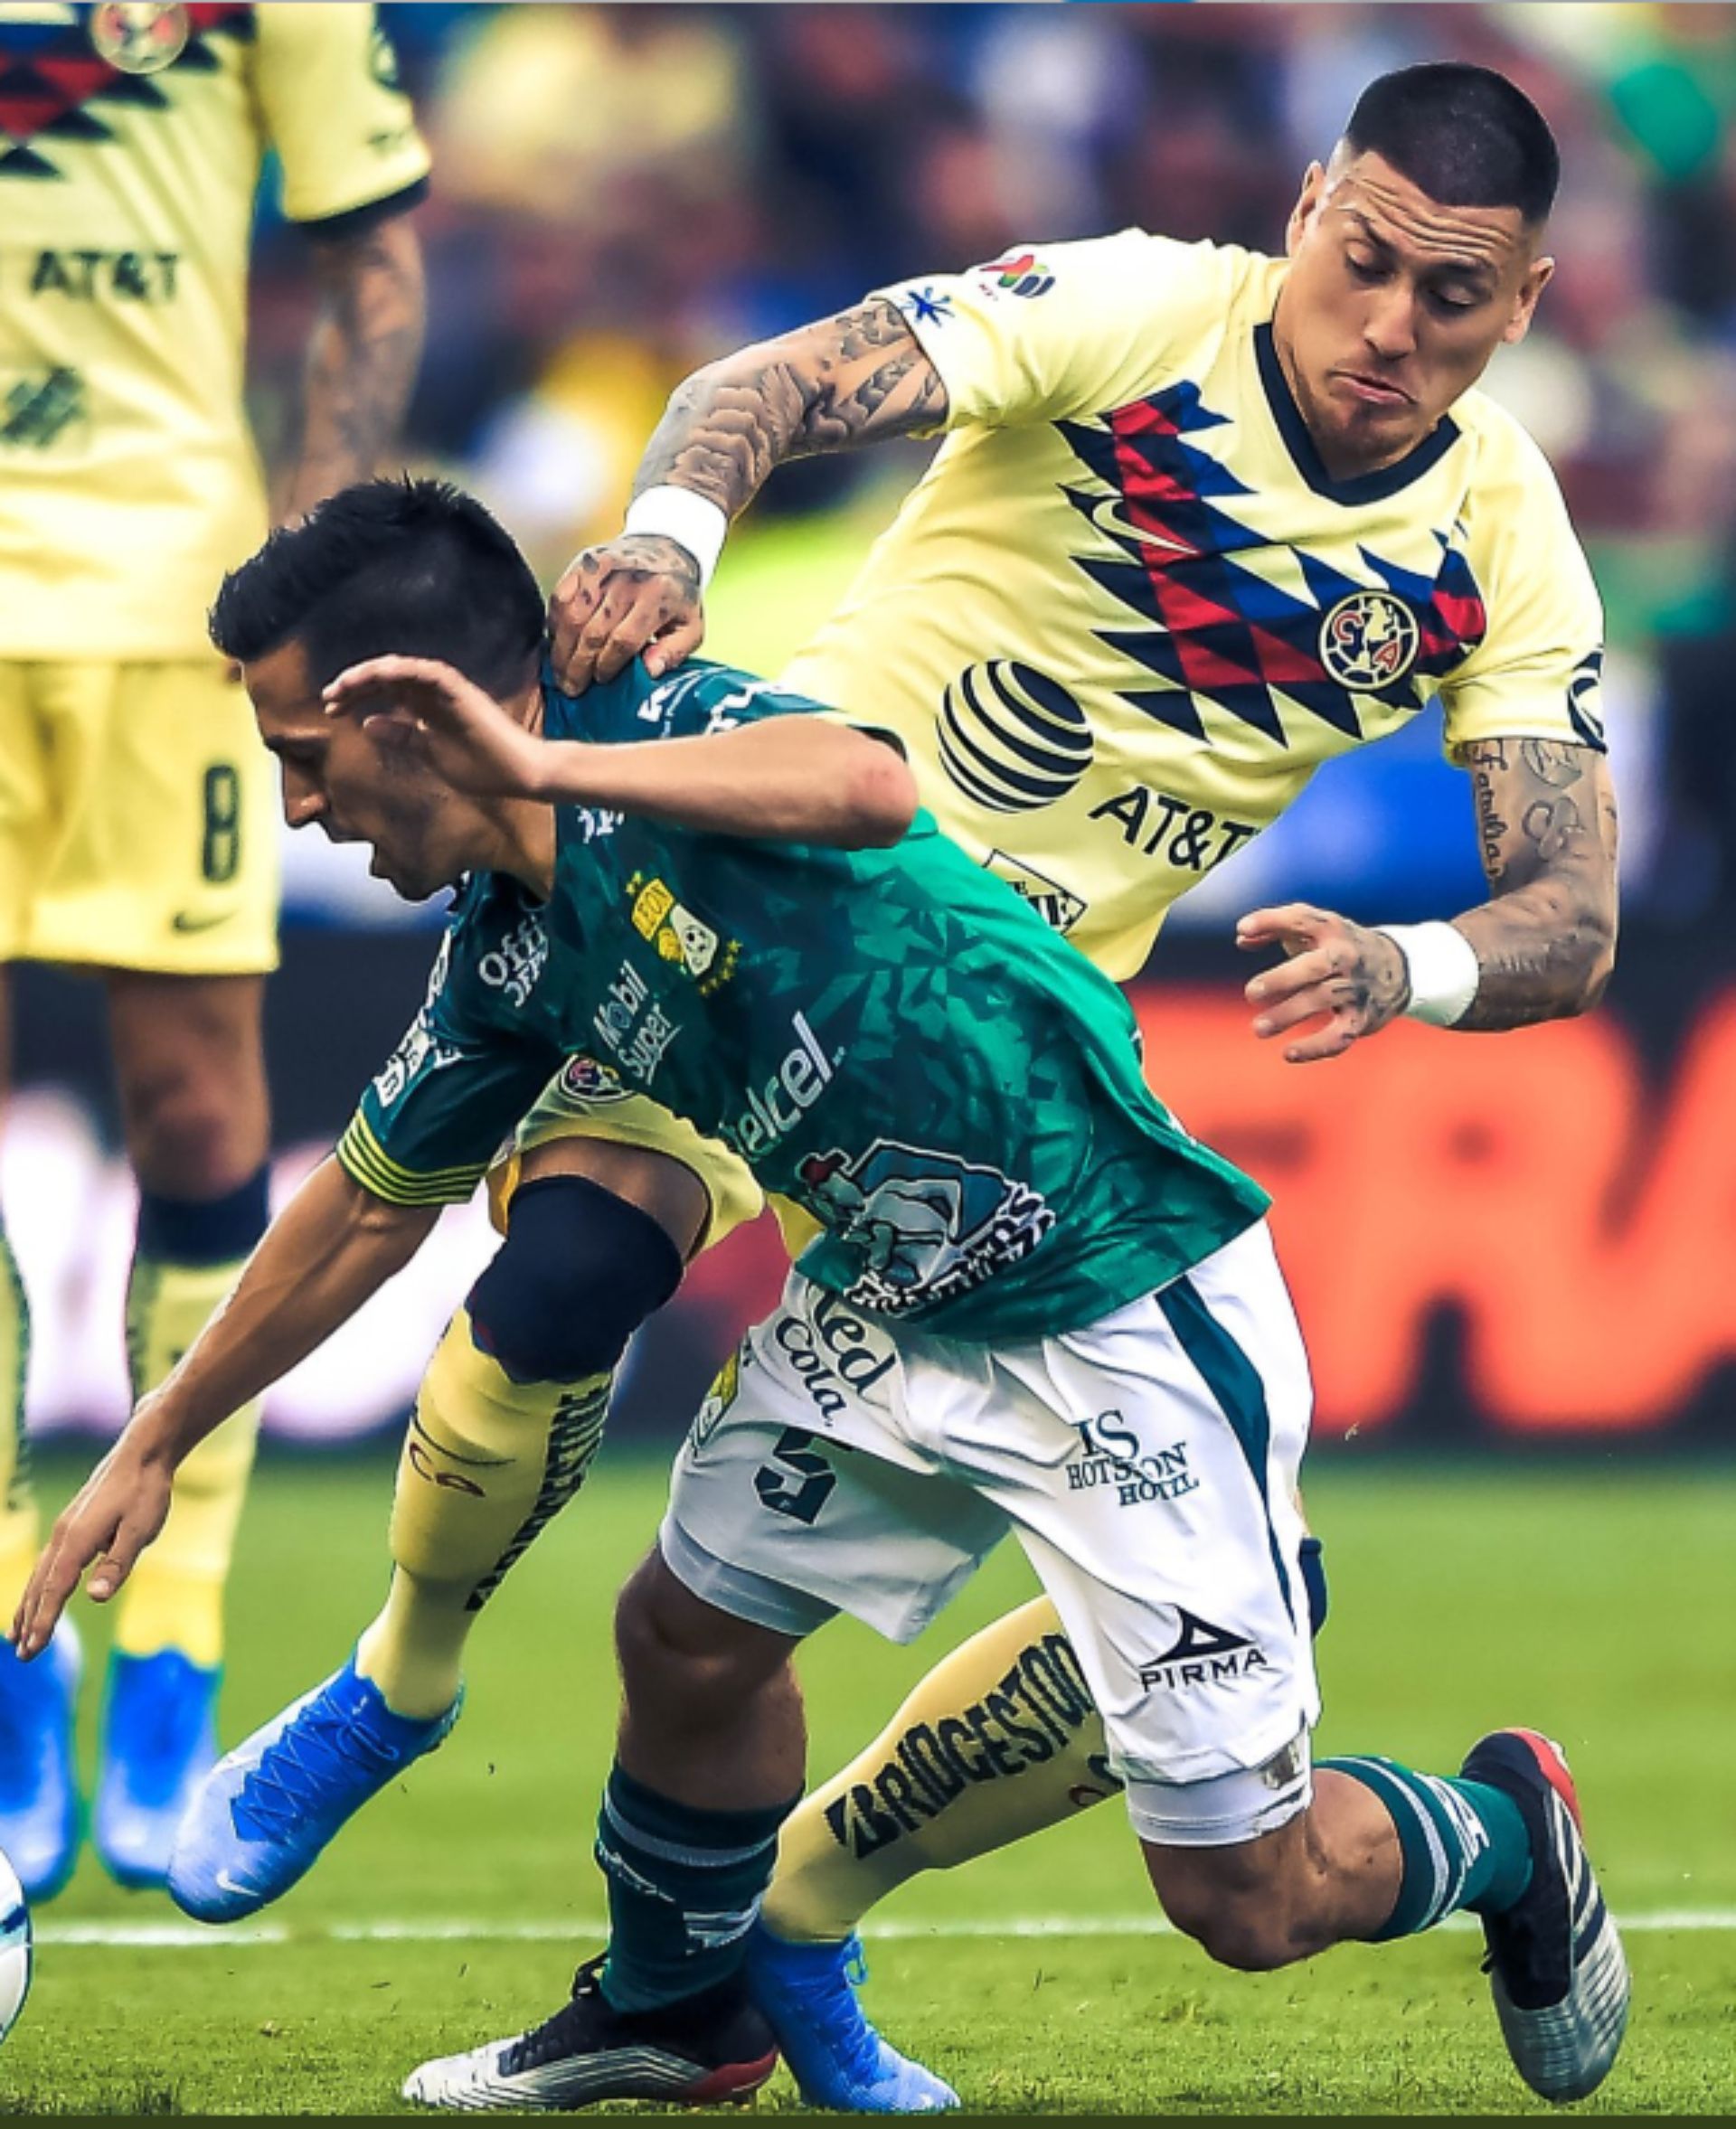 León se quedó con 10 jugadores en el campo tras una expulsión a los 82 minutos (Foto: Twitter)